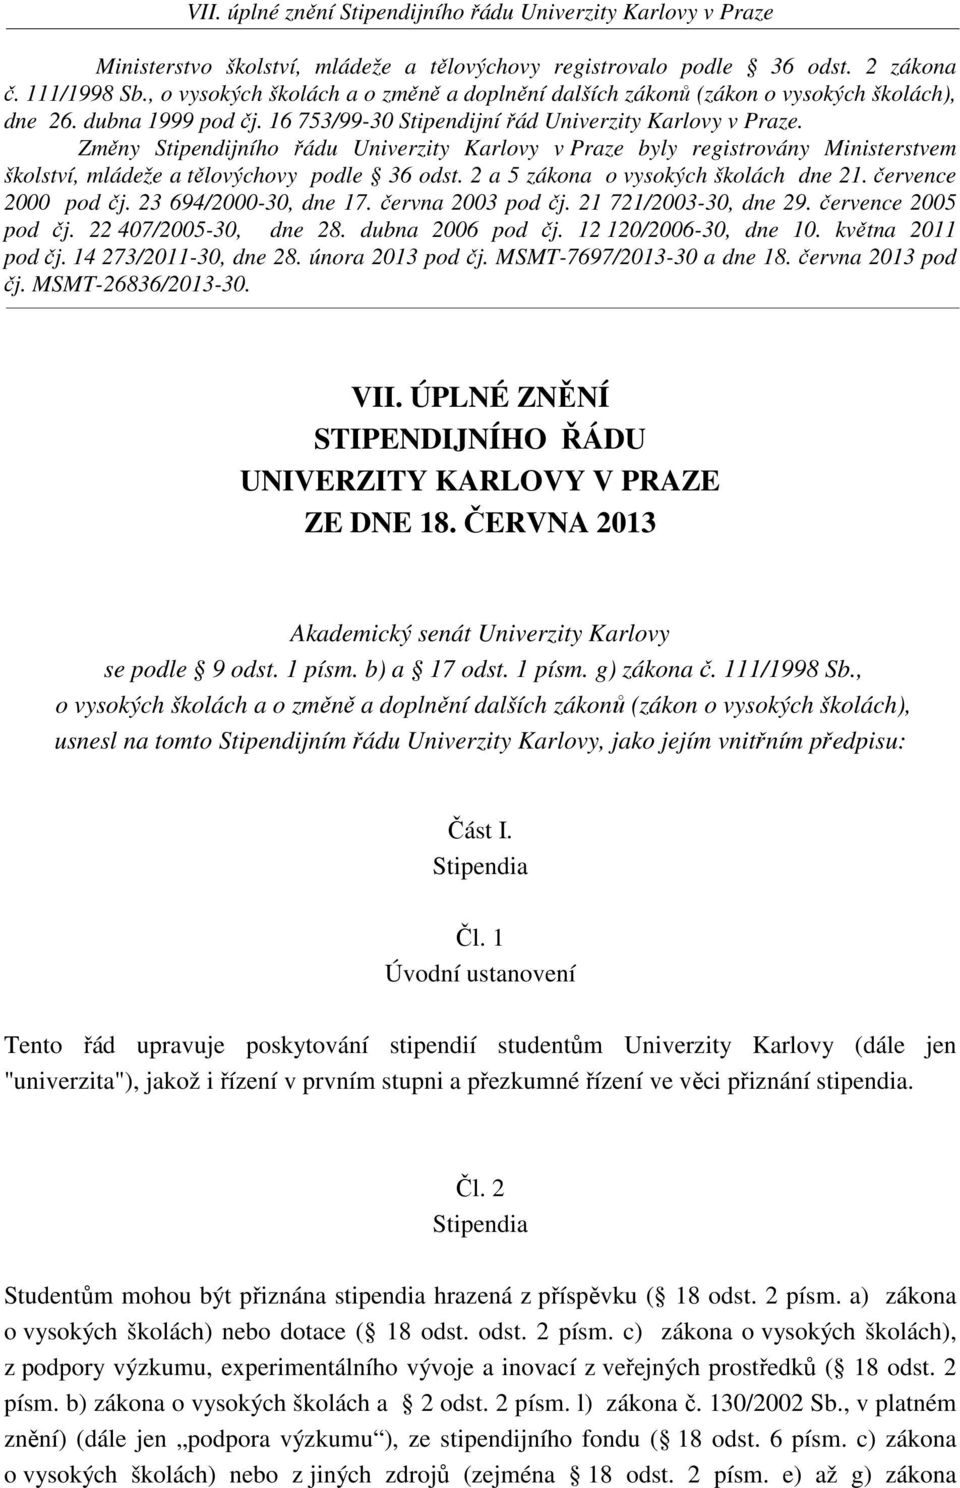 Změny Stipendijního řádu Univerzity Karlovy v Praze byly registrovány Ministerstvem školství, mládeže a tělovýchovy podle 36 odst. 2 a 5 zákona o vysokých školách dne 21. července 2000 pod čj.